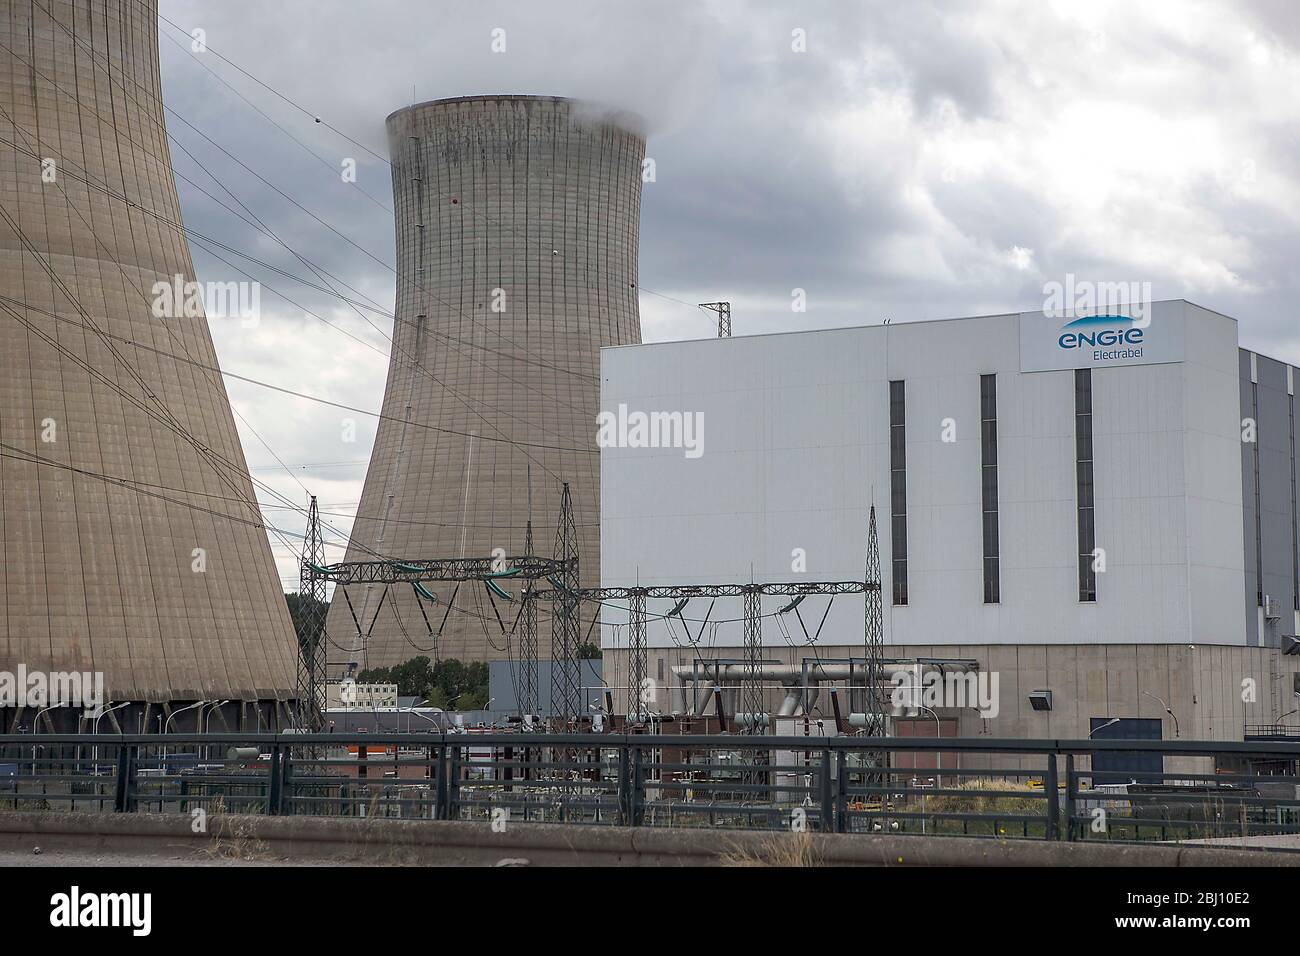 Das umstrittene Kernkraftwerk Tihange des Betreibers Electrabel M. V. nucleaire Produktie weist mehrere tausend Risse in der Außenhülle auf, die aber Foto Stock